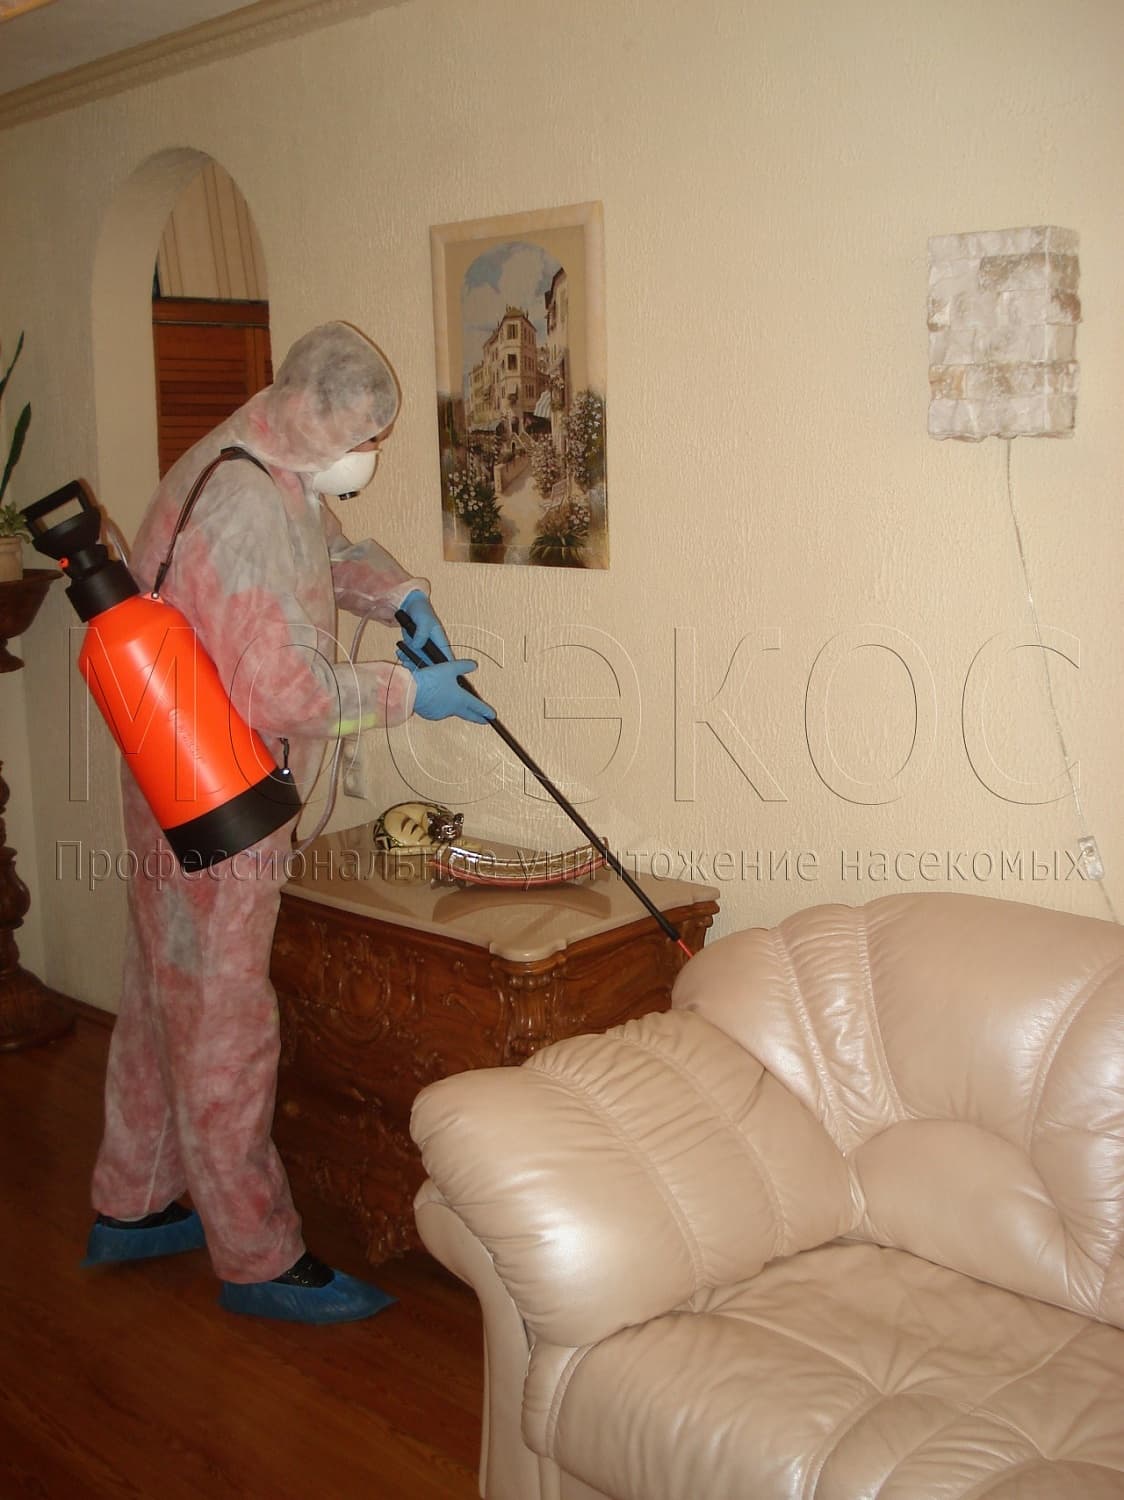 Клопы дома: как избавиться от паразитов в Путилково